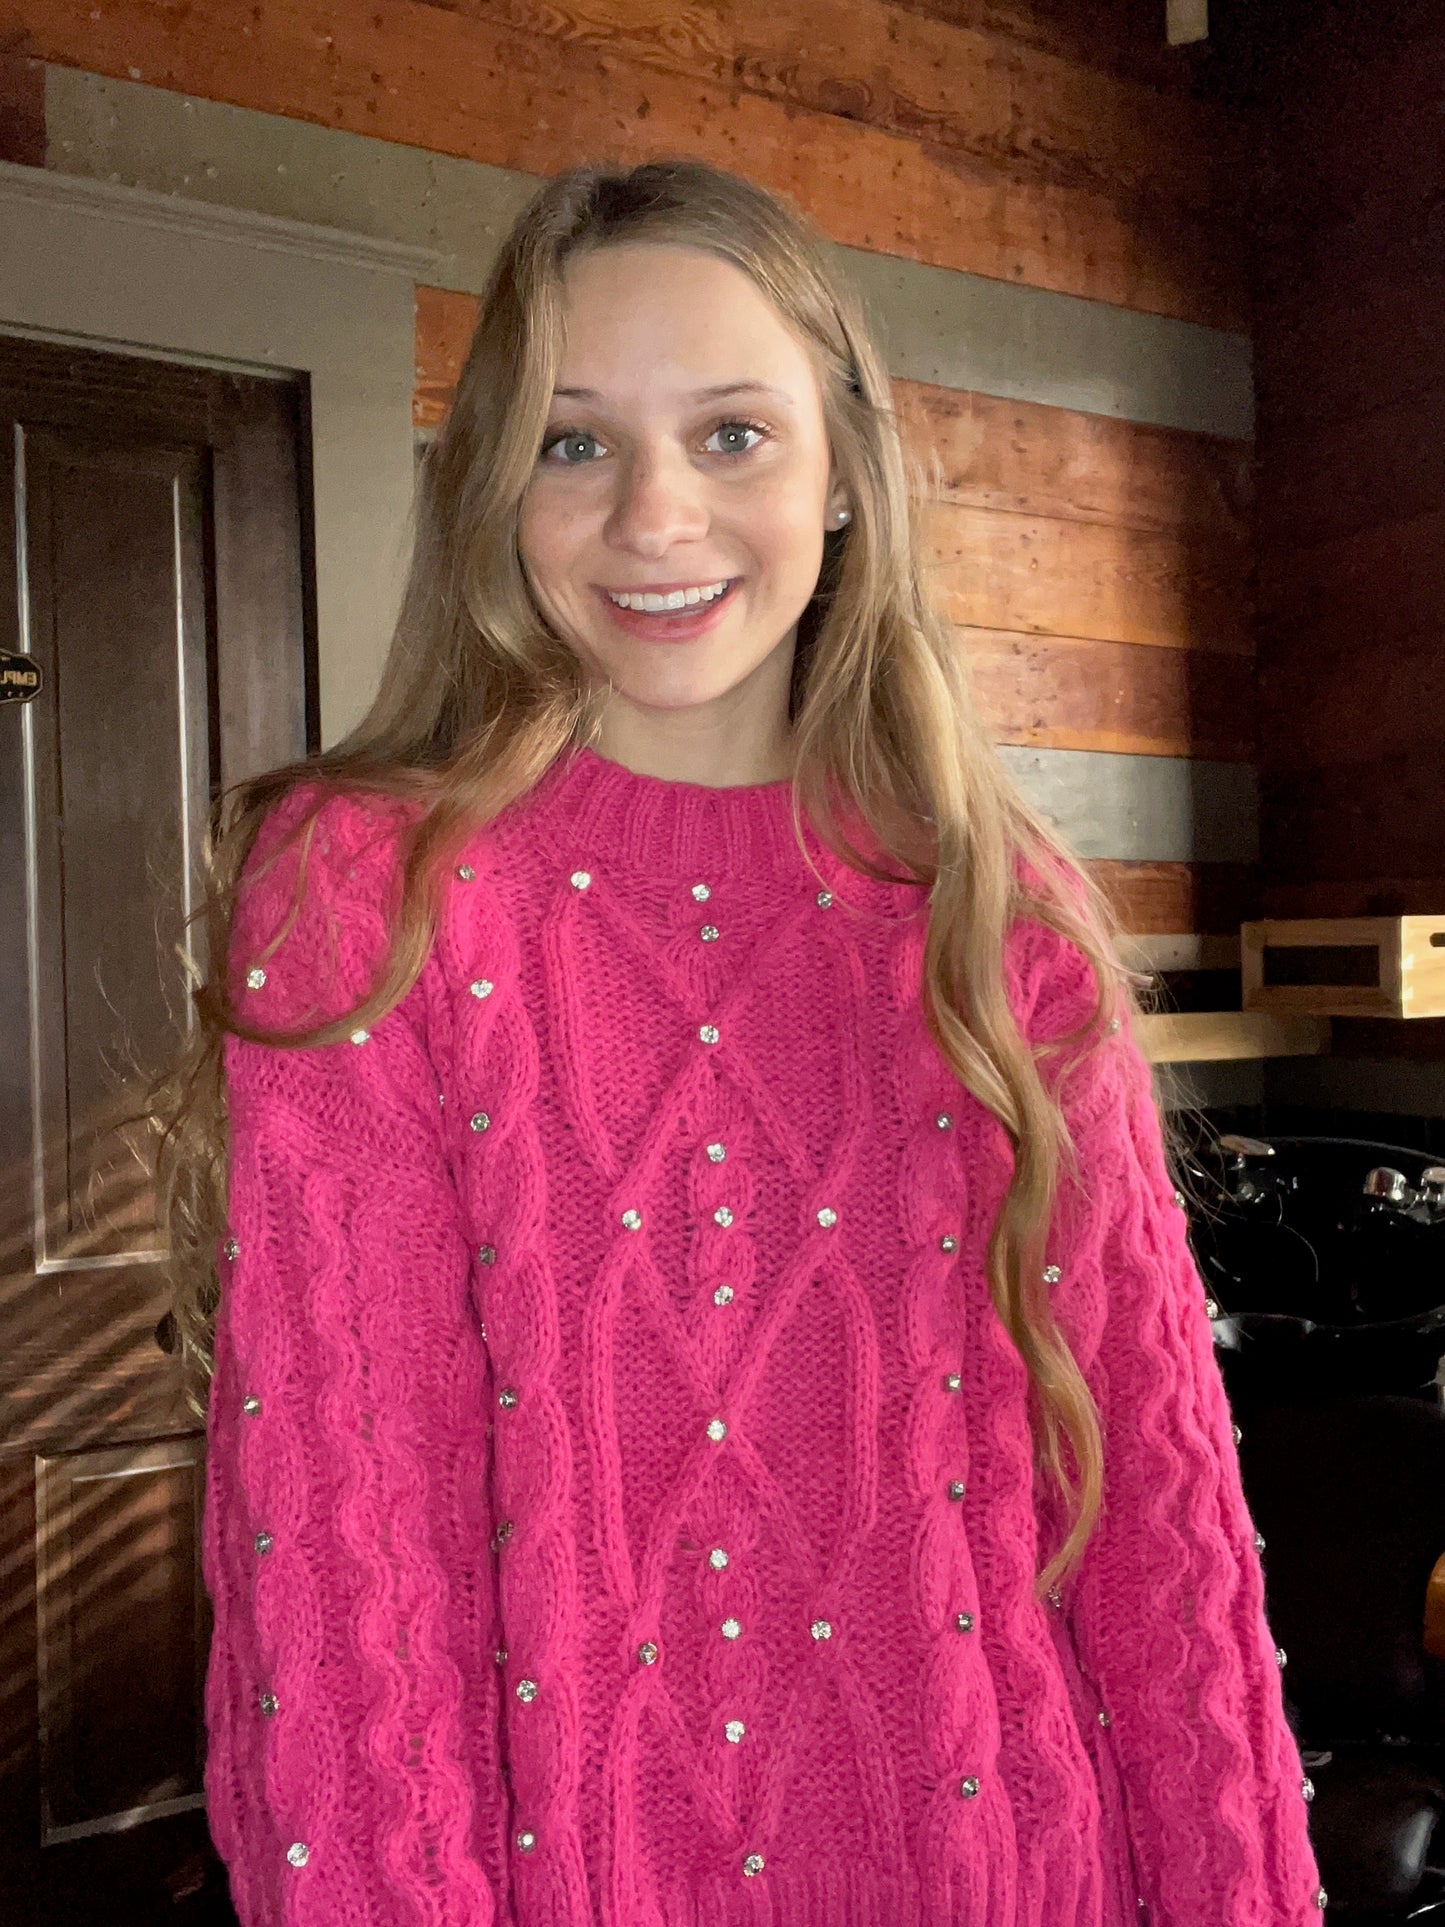 Pink Knit Rhinestone Sweater